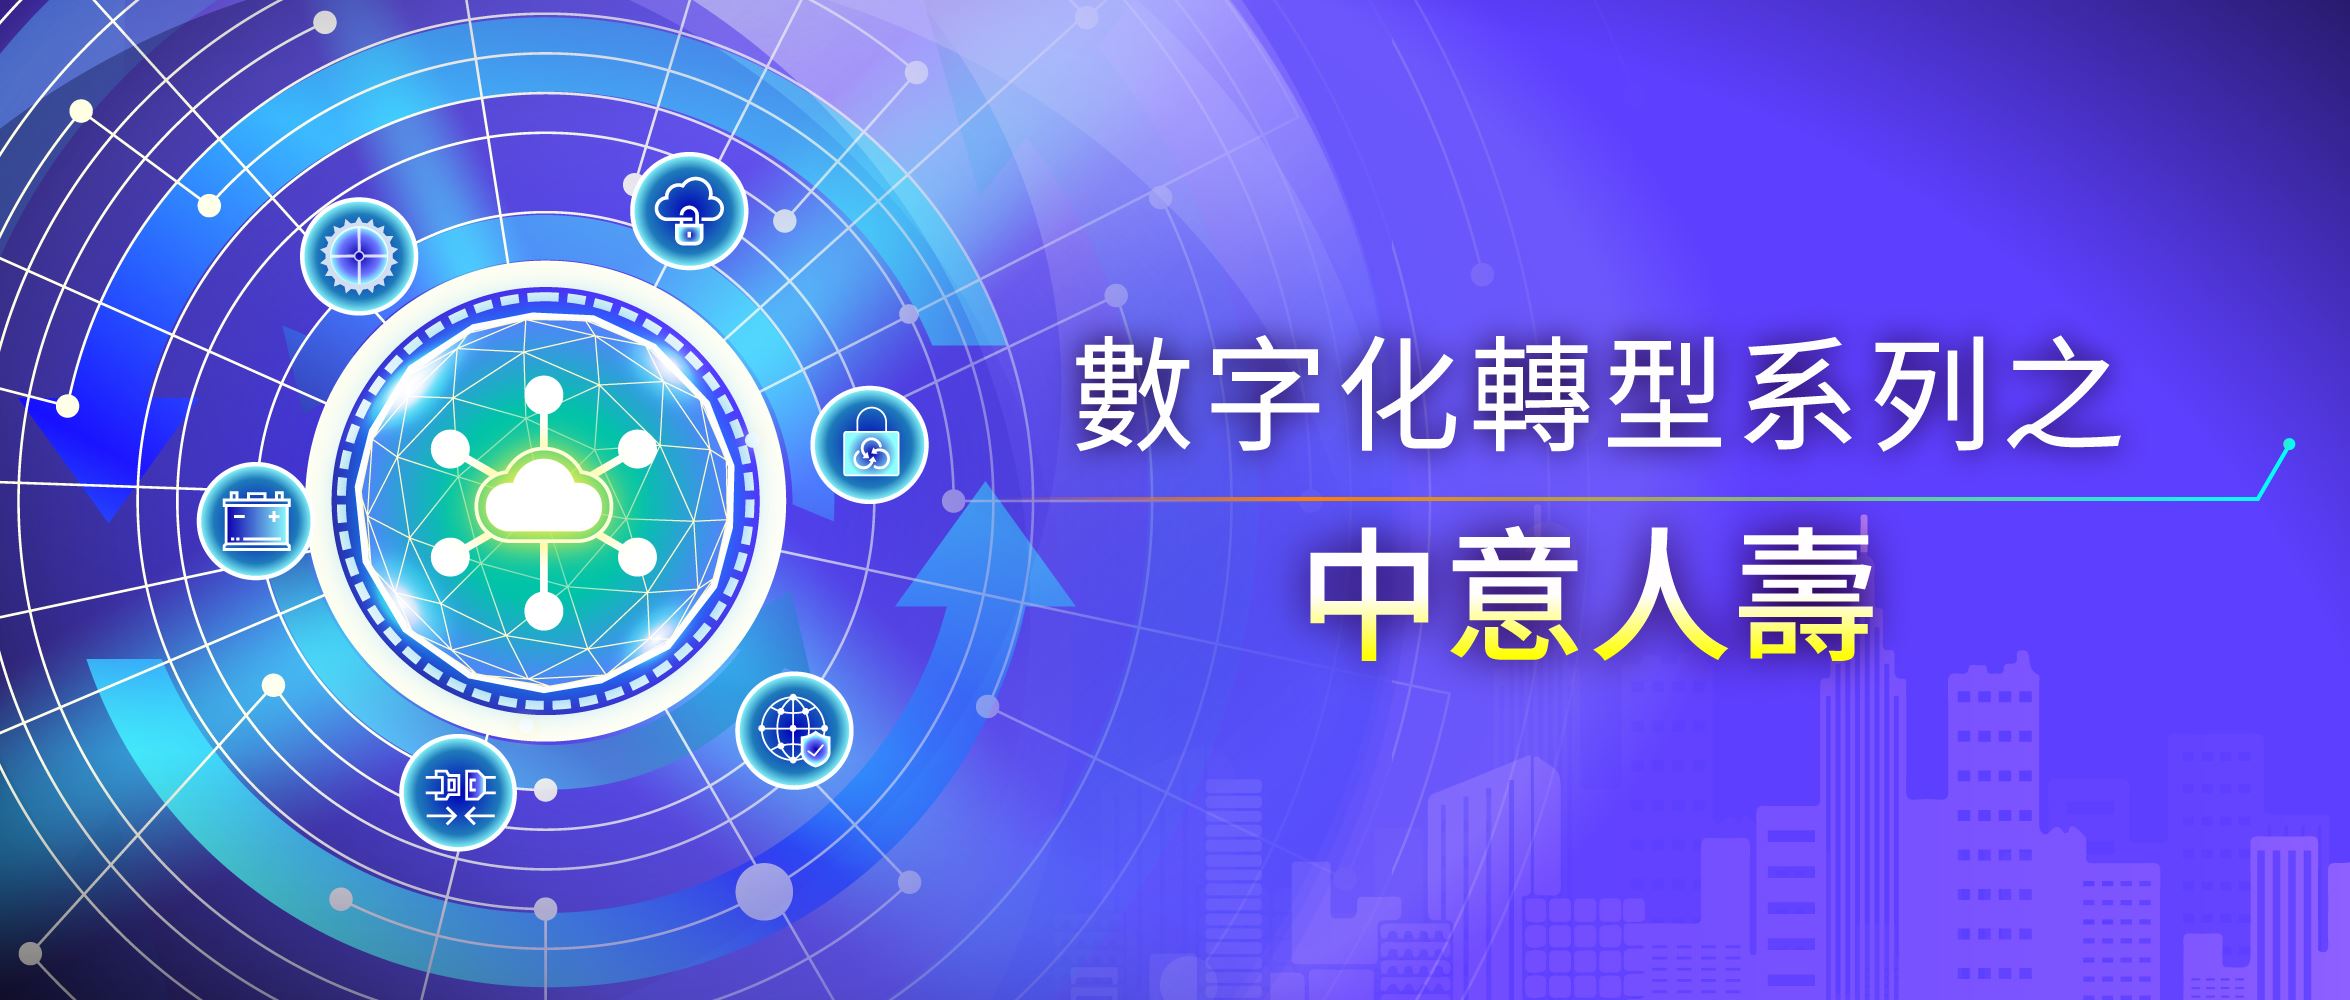 中意人壽SD-WAN 廣域網優化項目入選“2022年度中國SDN、NFV、網絡AI優秀案例”